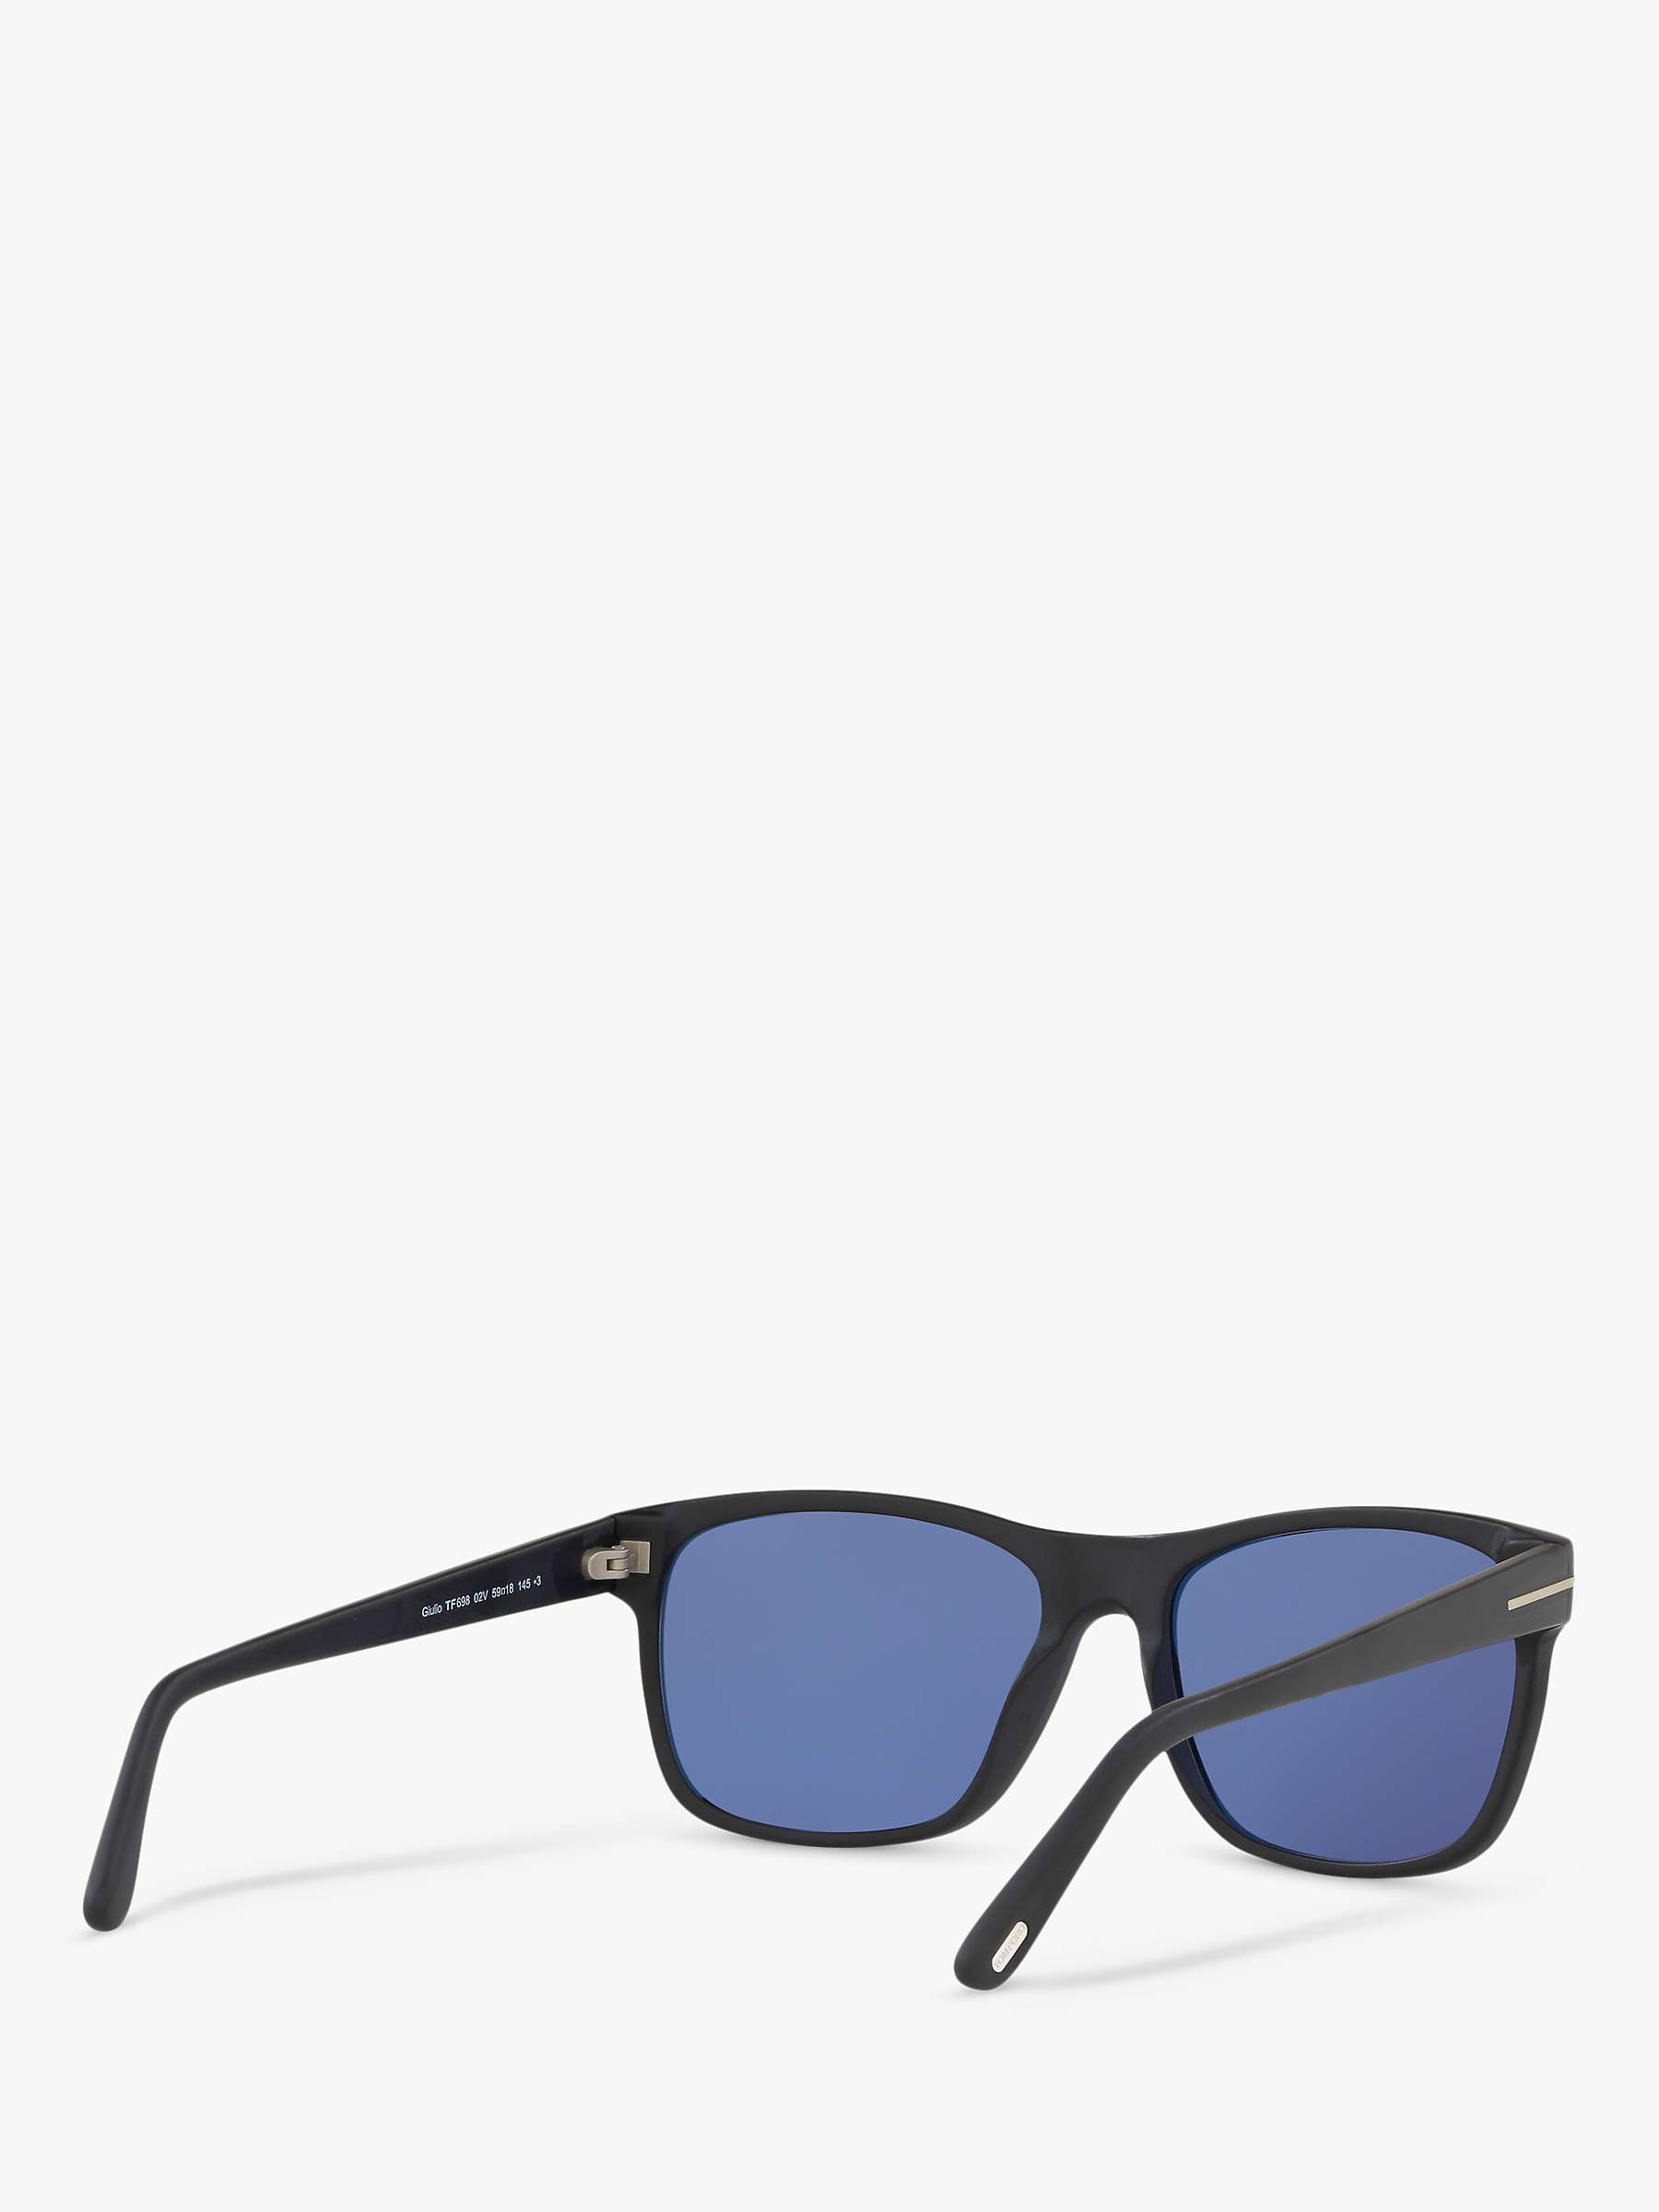 Buy TOM FORD FT0698 Men's Giulio Polarised Square Sunglasses Online at johnlewis.com